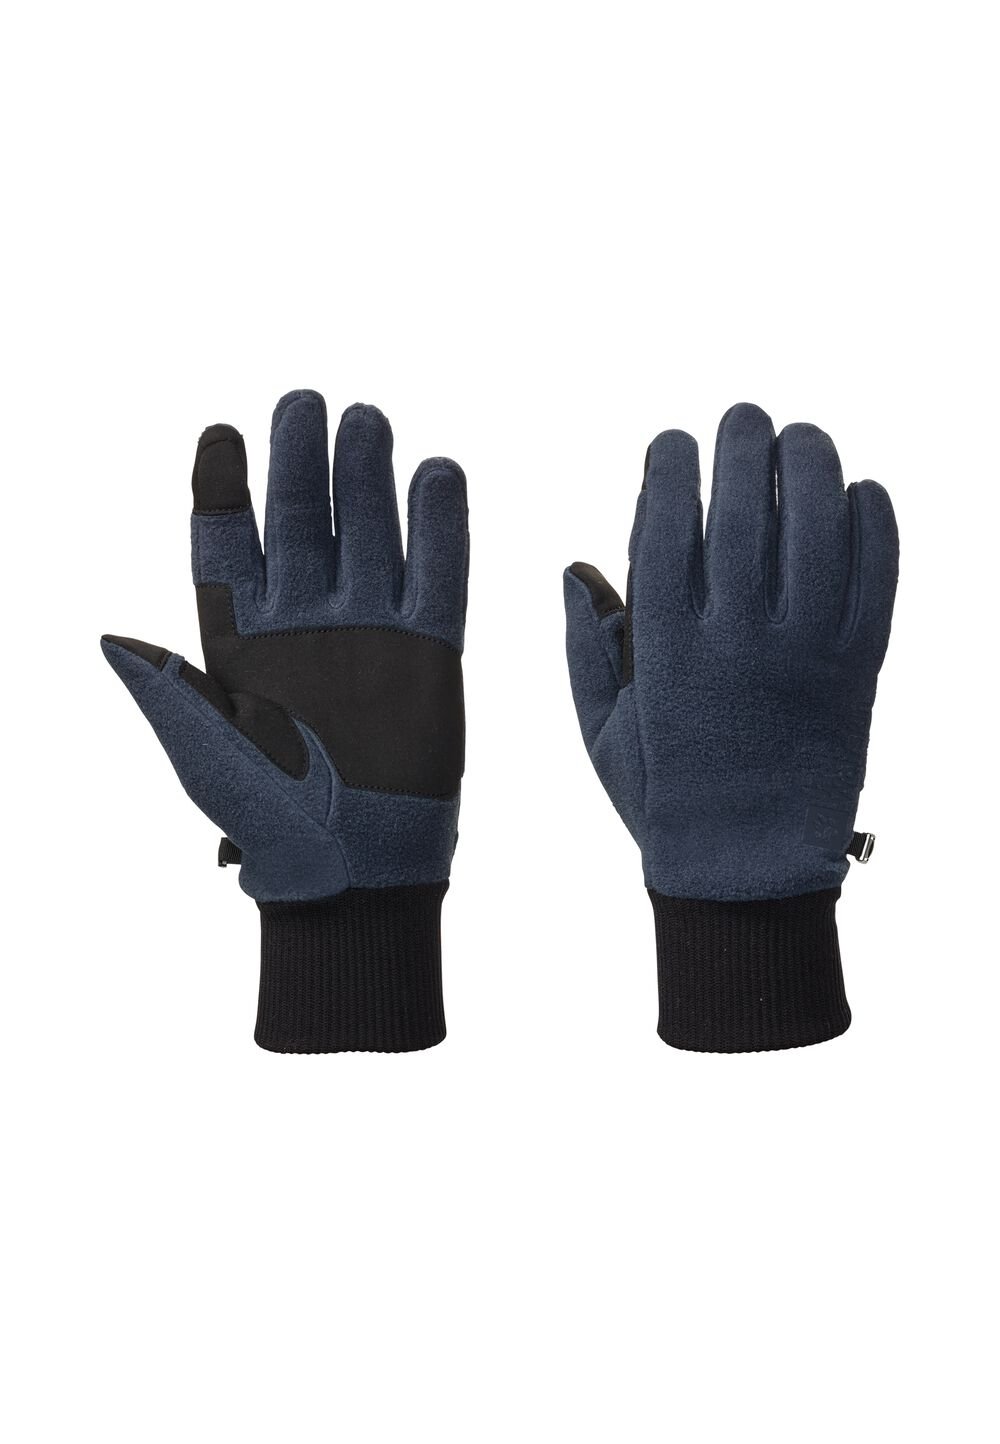 Jack Wolfskin Vertigo Glove Fleece handschoenen L blue night blue